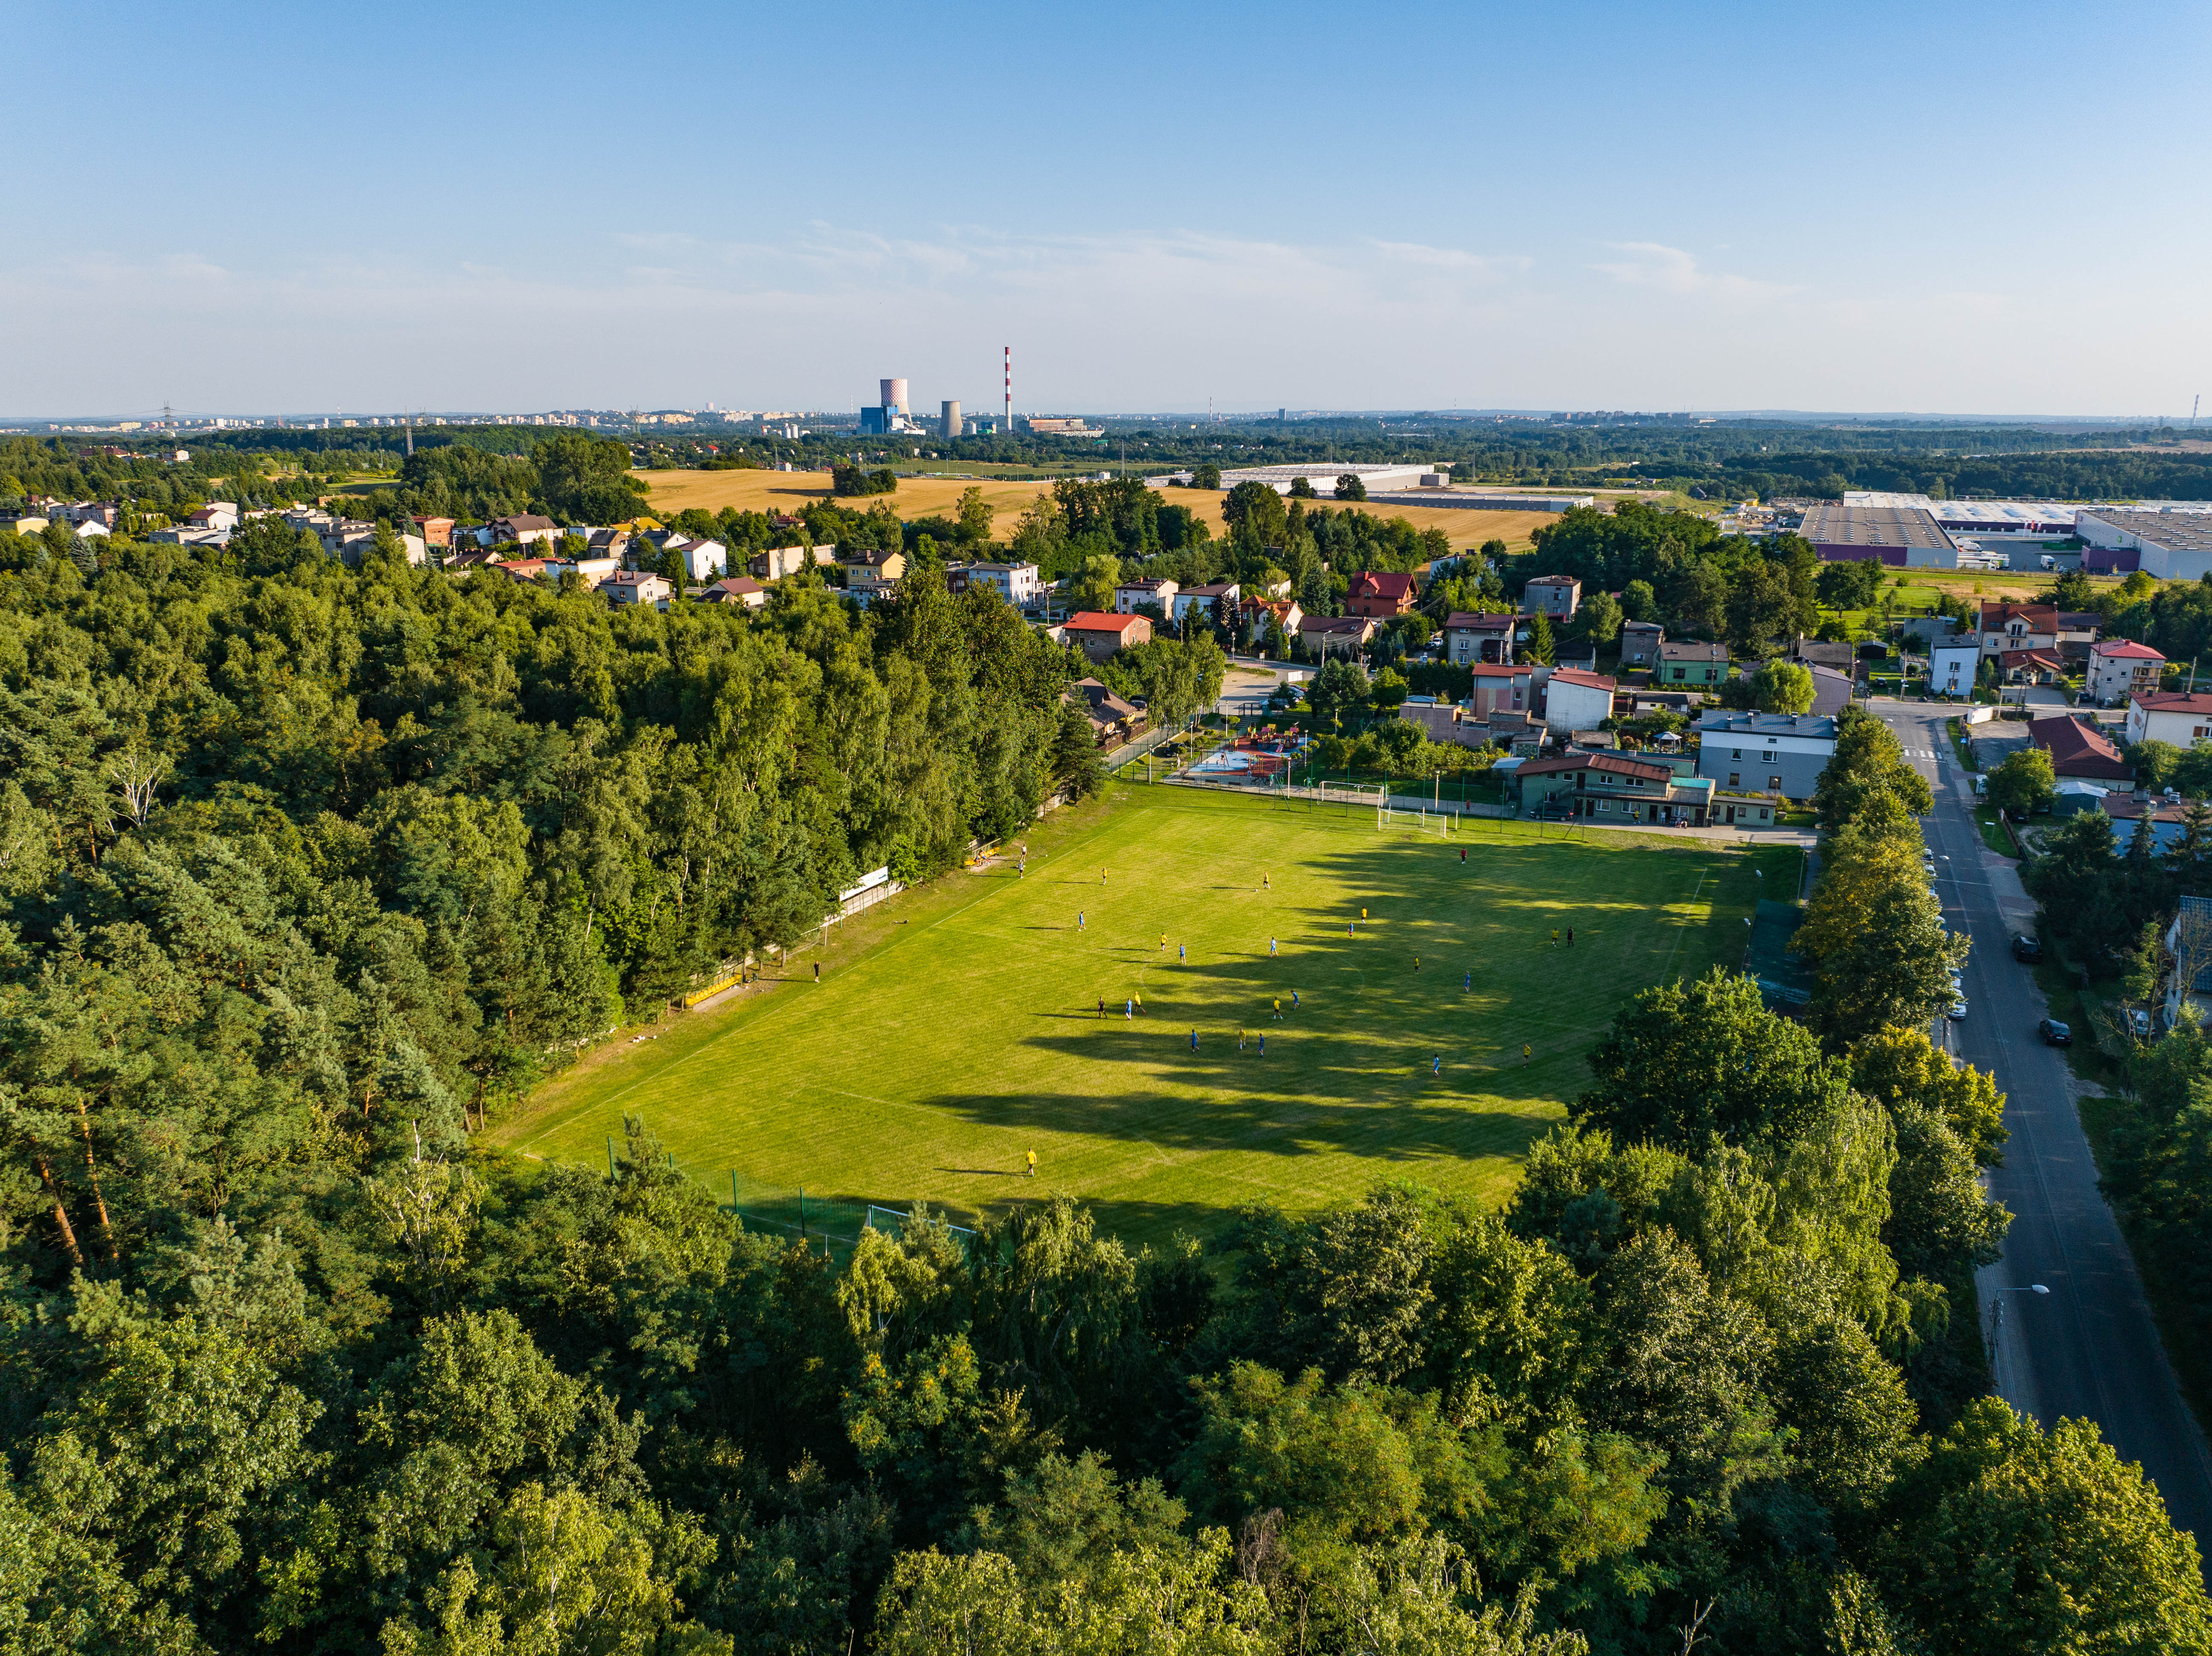 Zdjęcie przedstawia boisko sportowe z zawodnikami z lotu ptaka, dookoła las i panorama pobliskich miejscowości